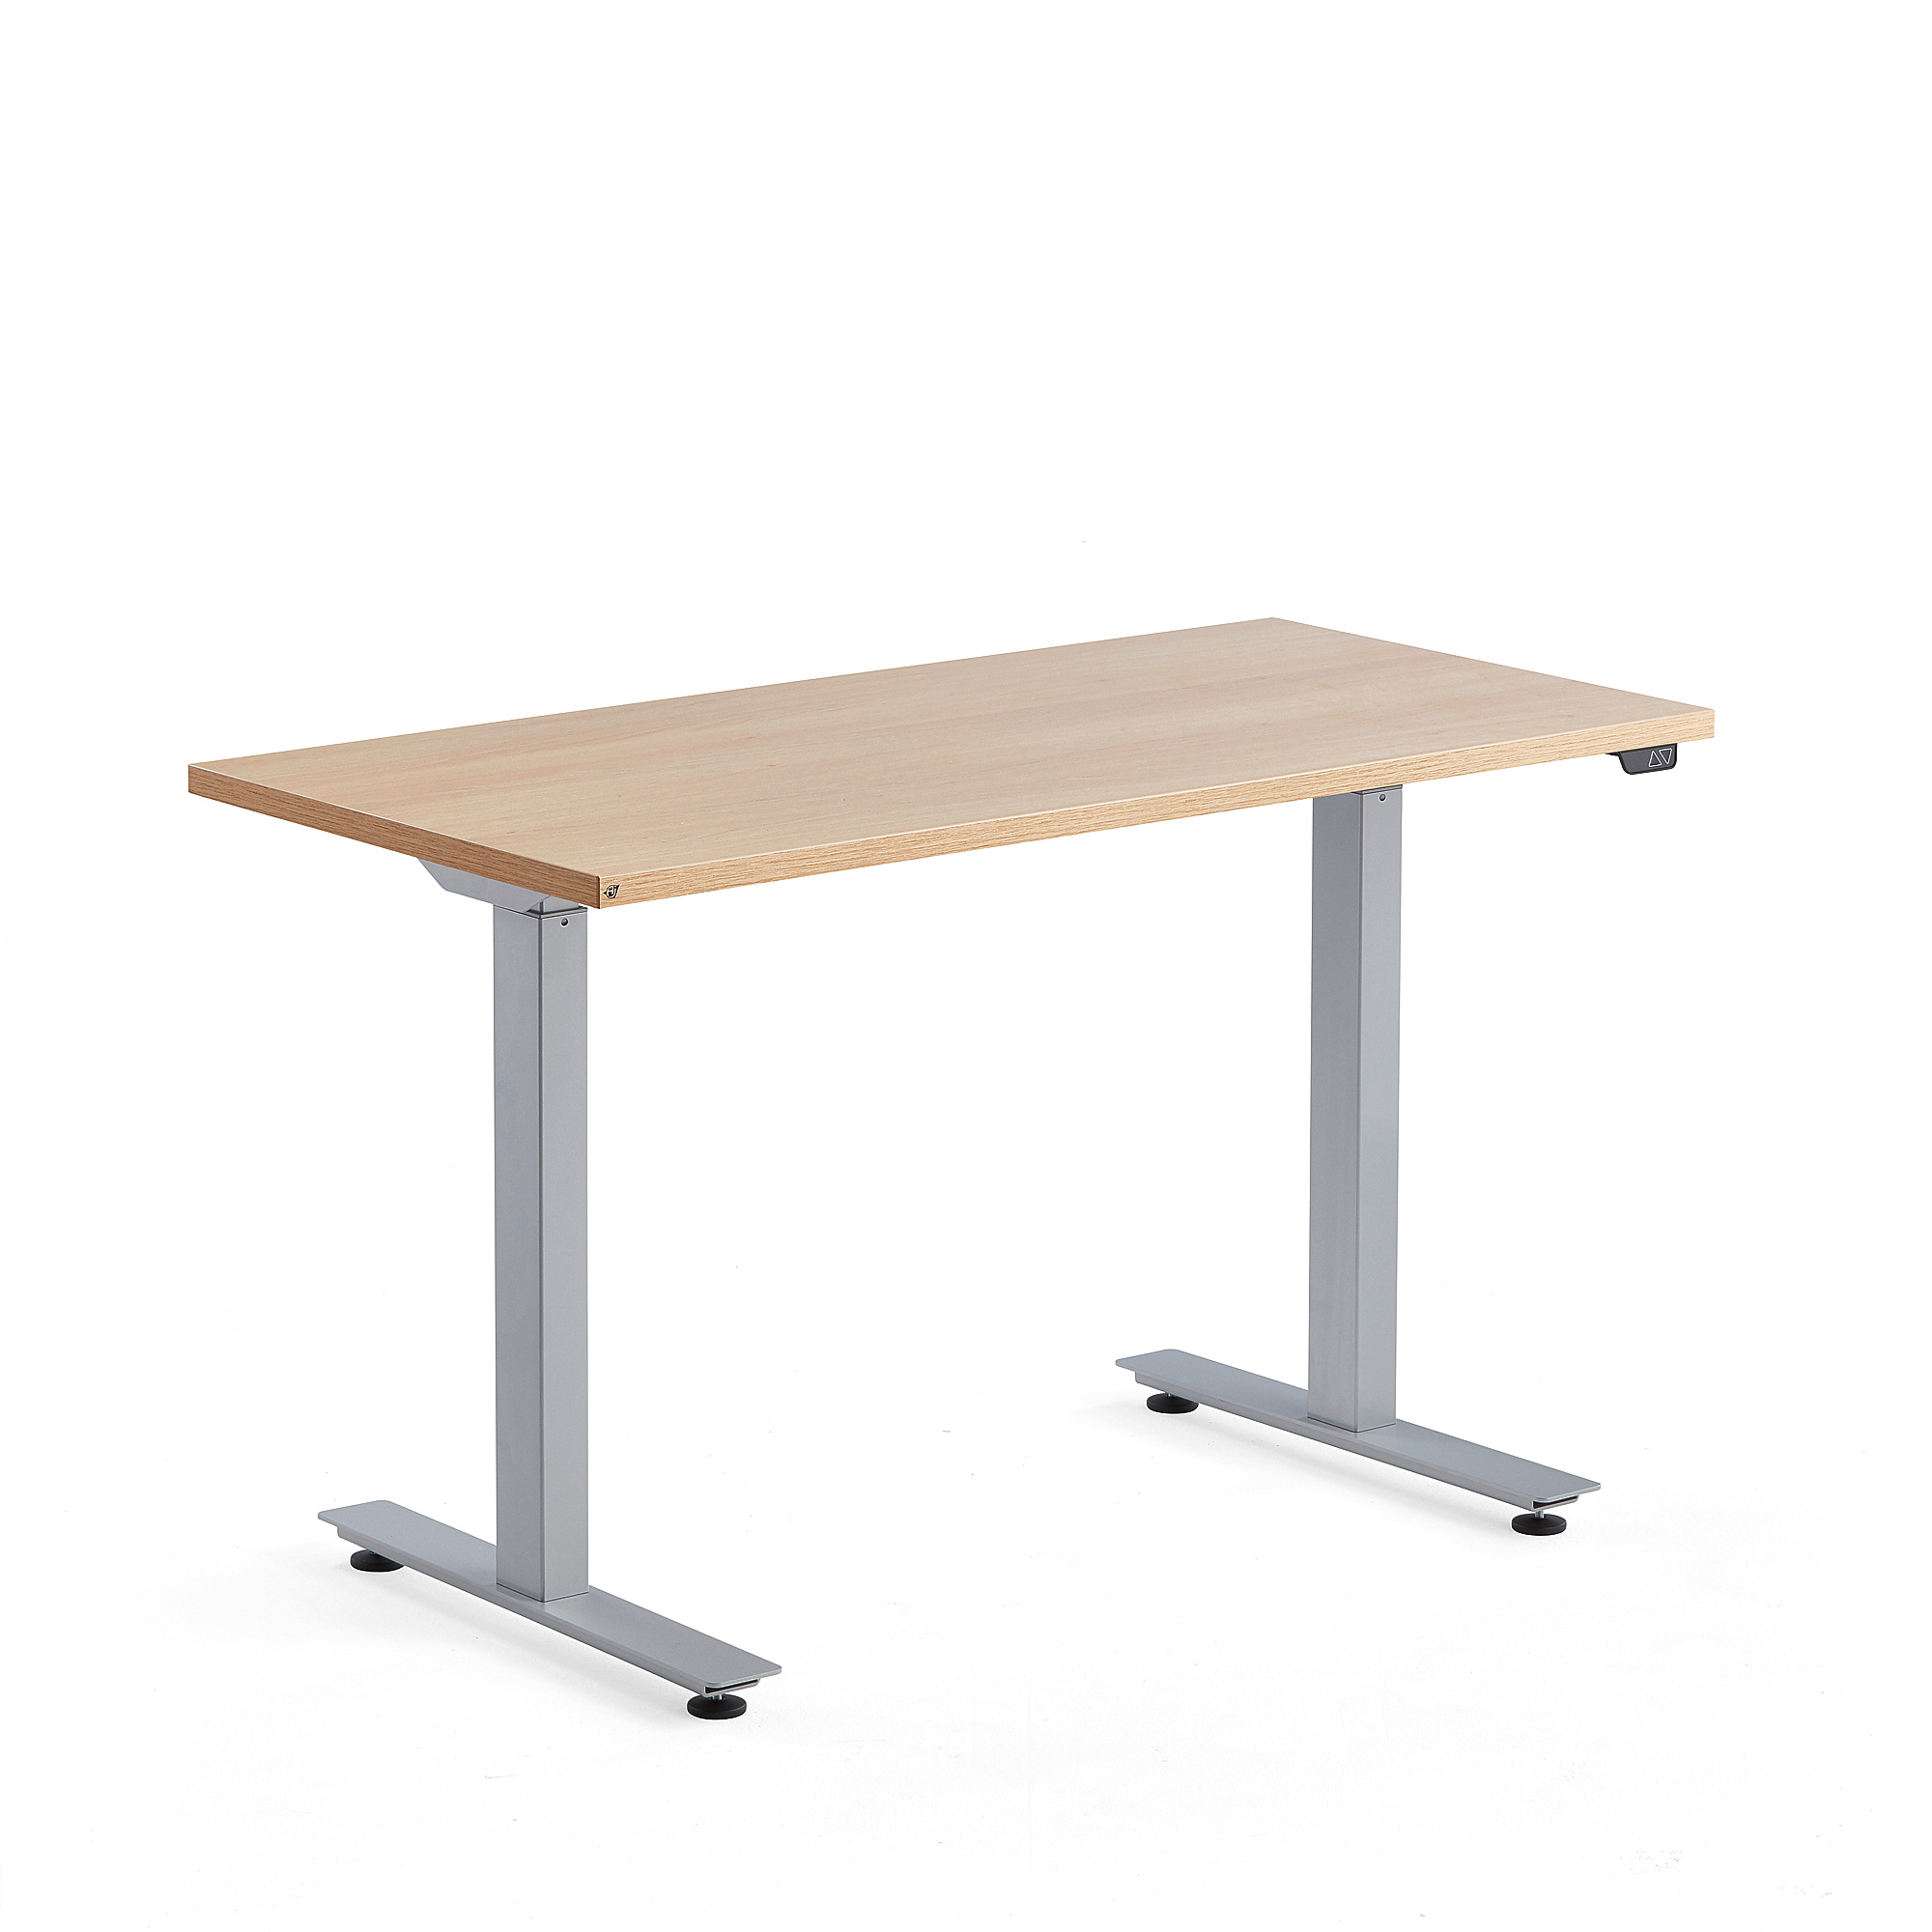 Výškově nastavitelný stůl MODULUS, 1200x600 mm, stříbrný rám, dub